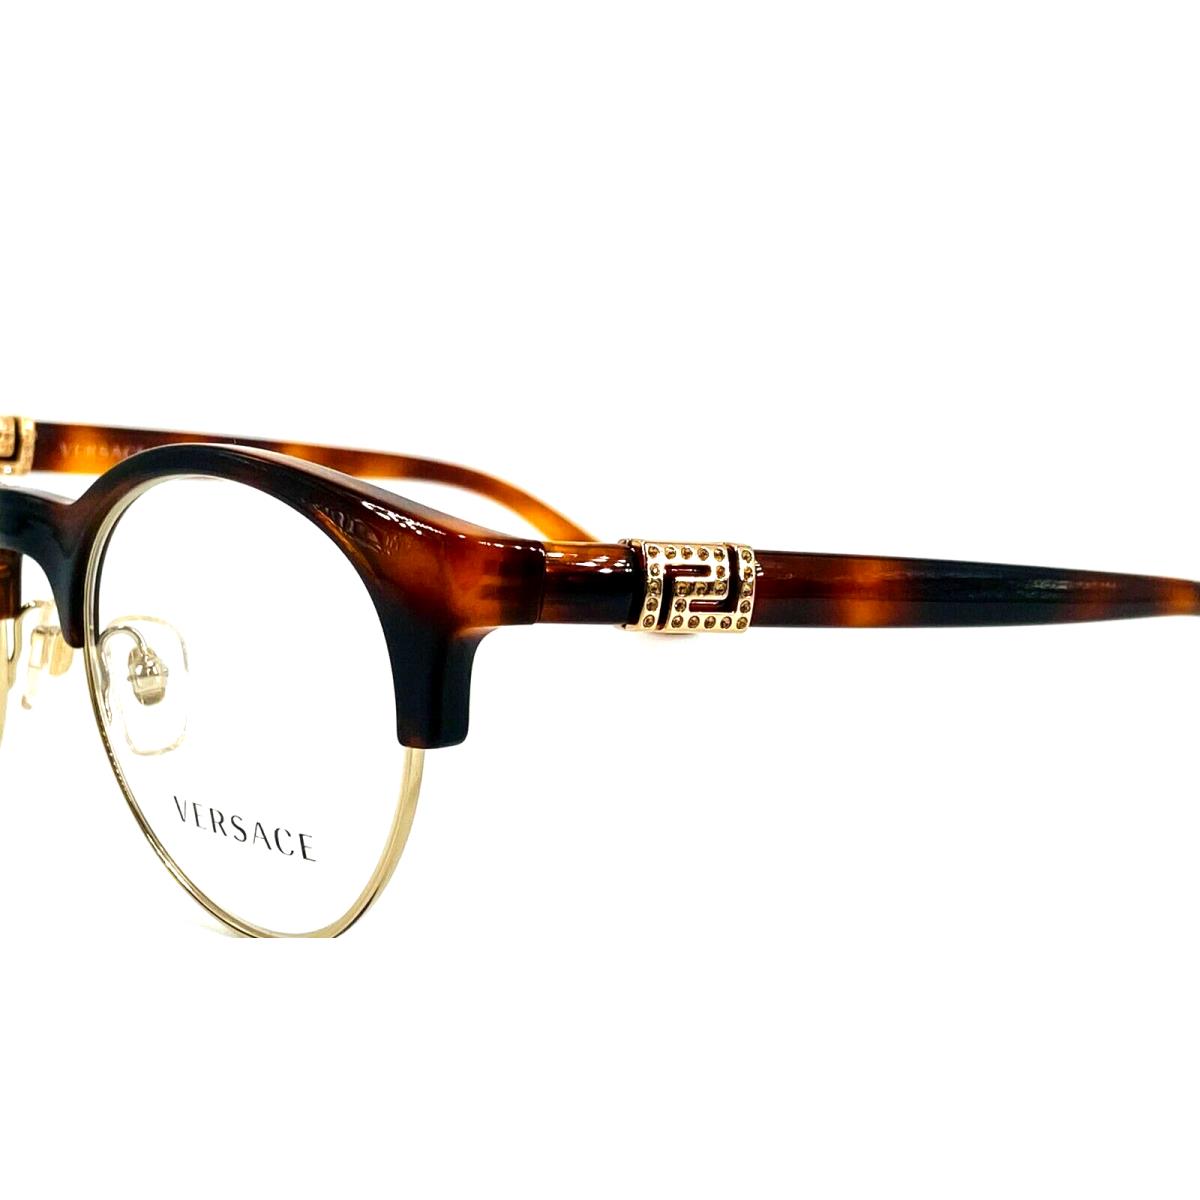 Versace eyeglasses  - 5217 Havana , Brown Frame 1